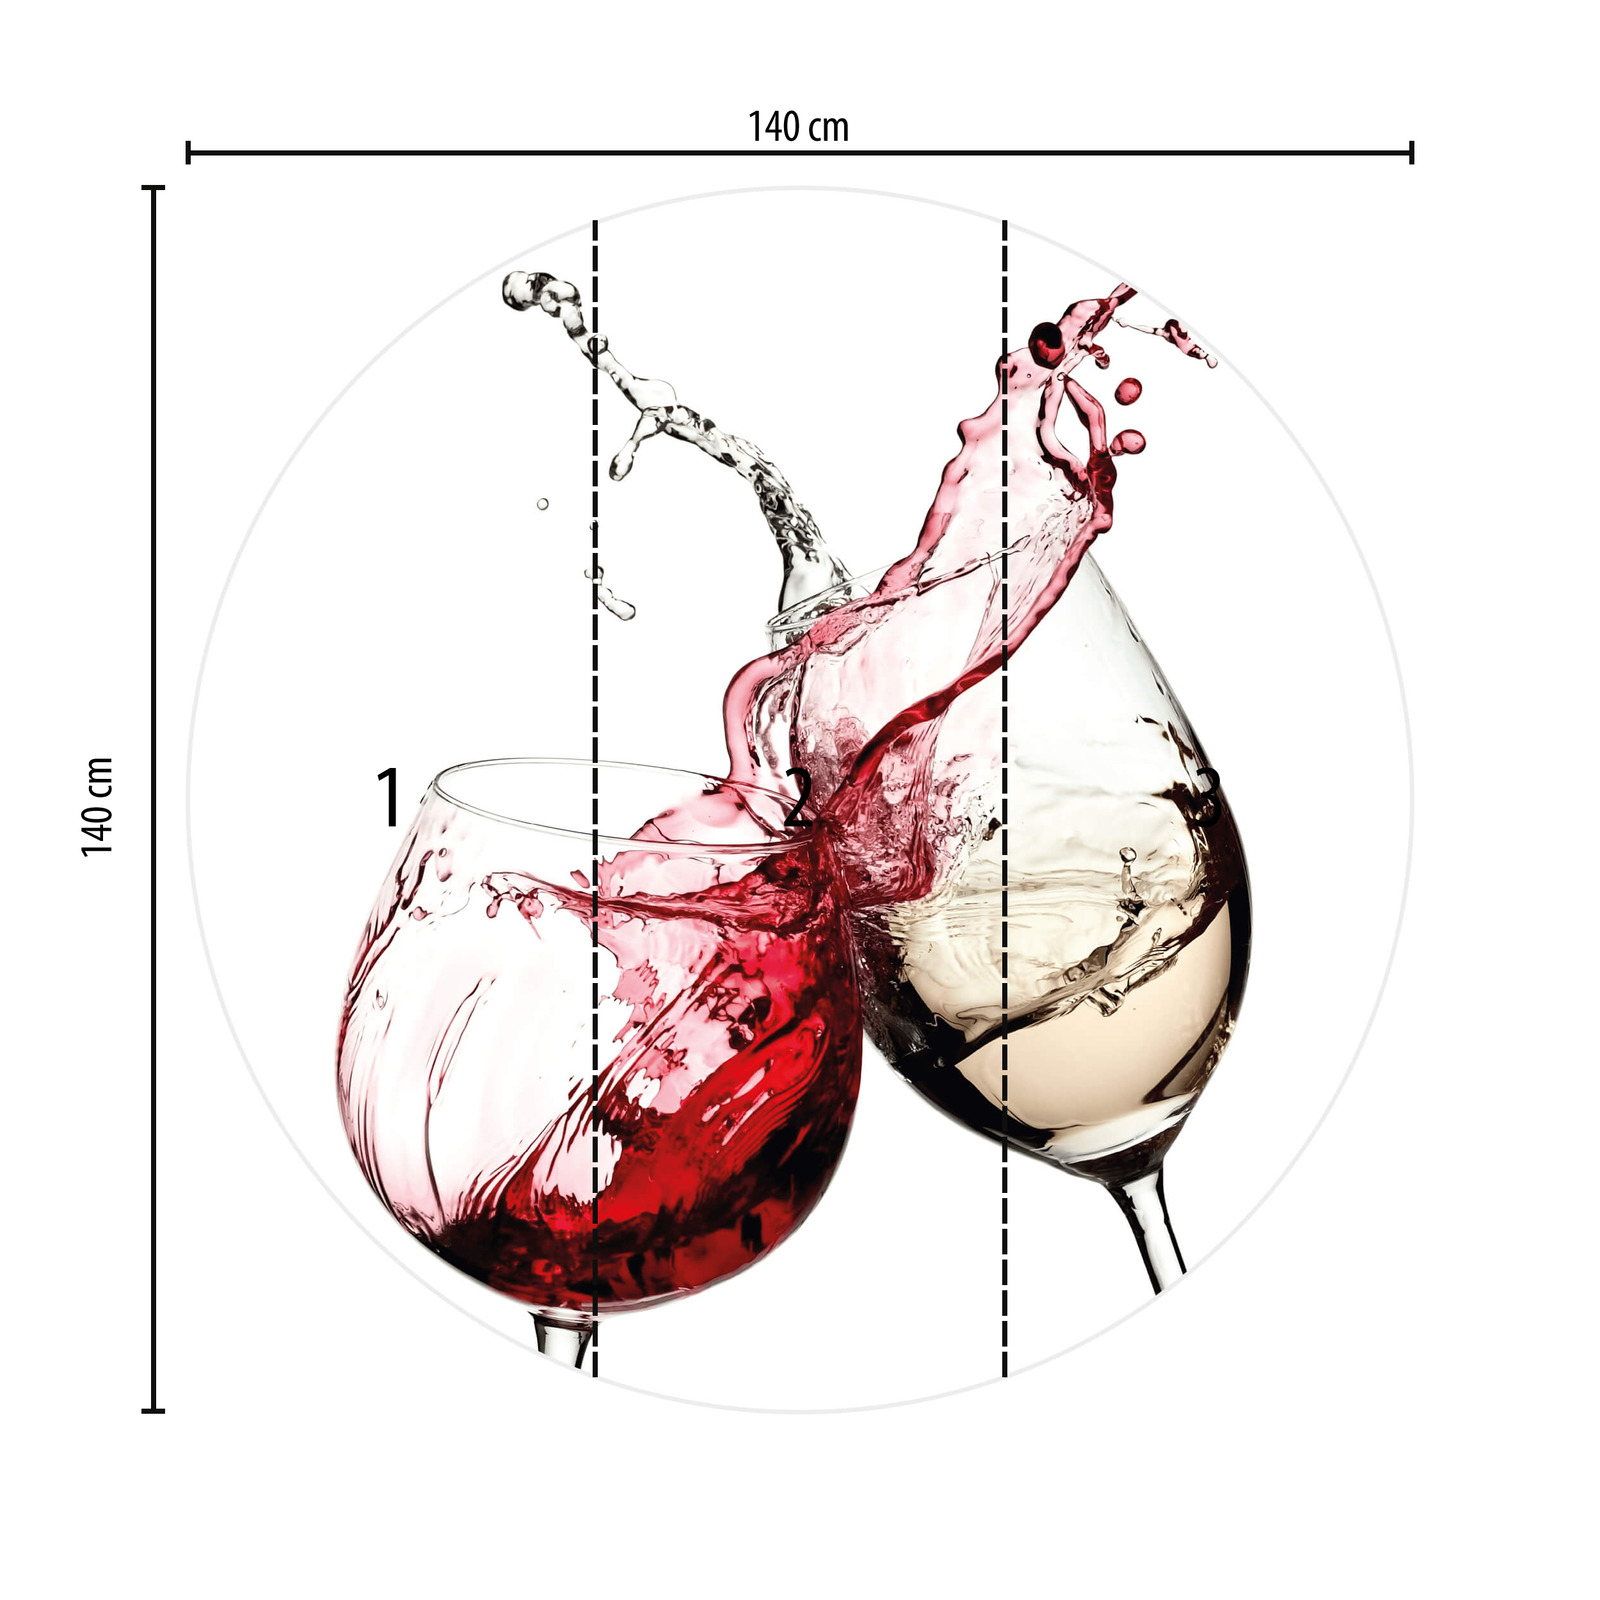             Keukenbehang Drankjes in een Glas, Wijn Rood & Wit
        